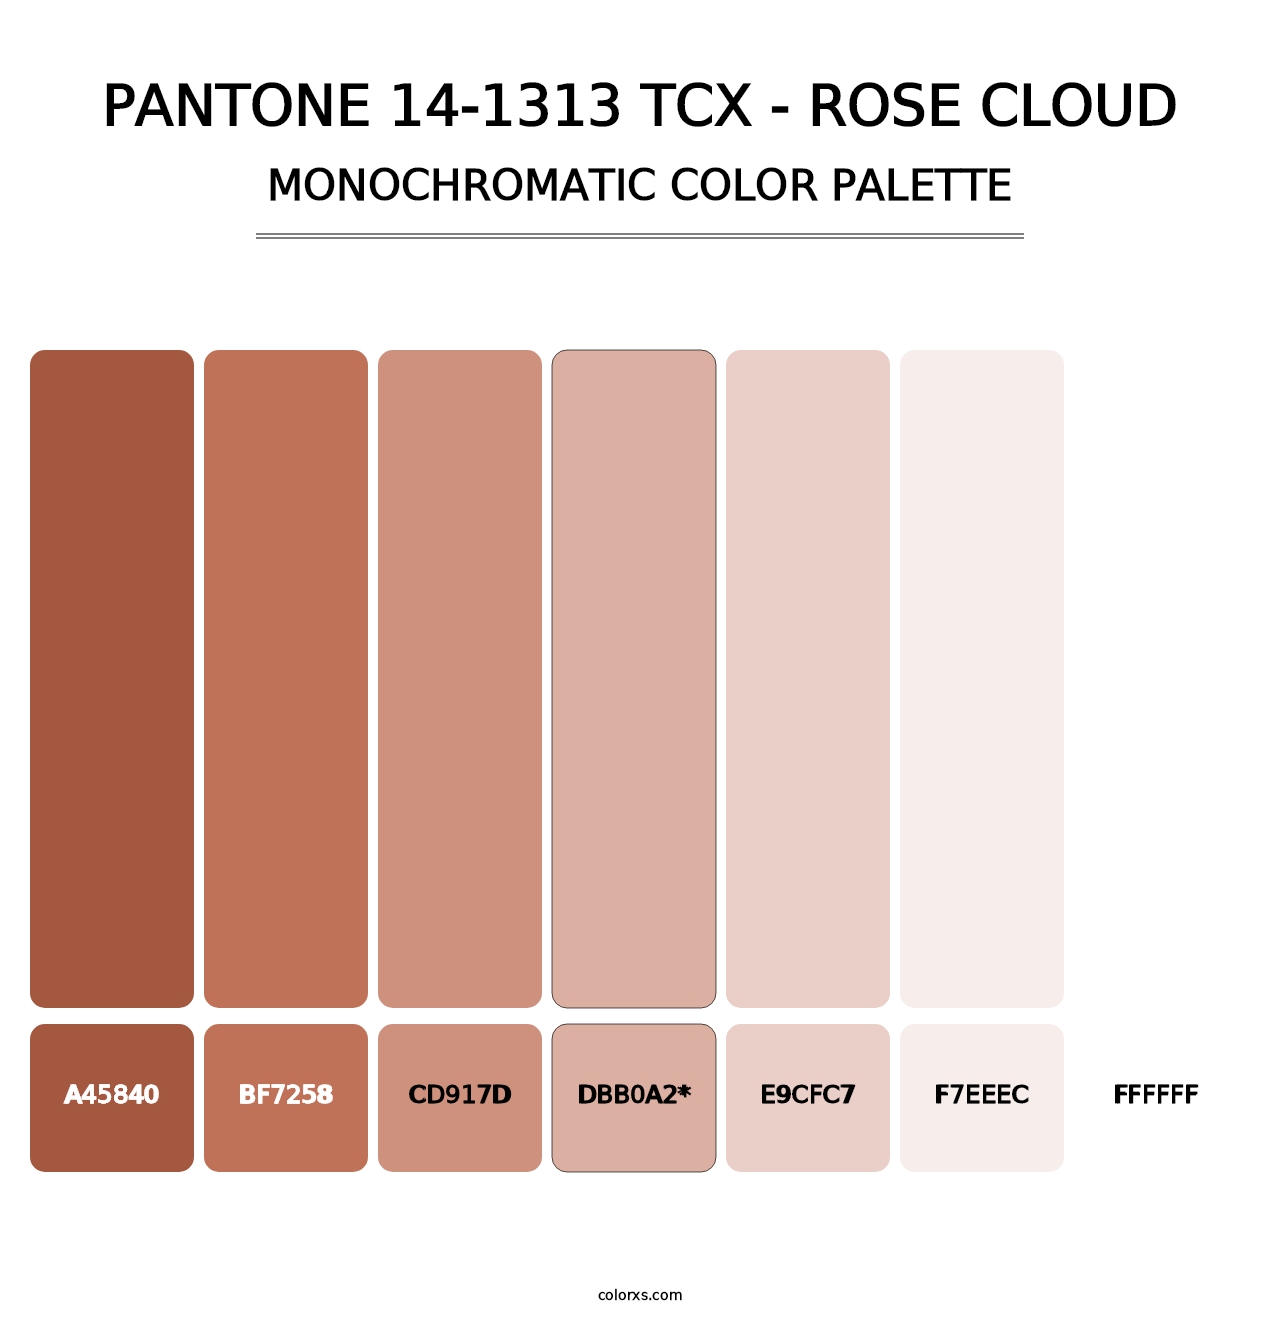 PANTONE 14-1313 TCX - Rose Cloud - Monochromatic Color Palette